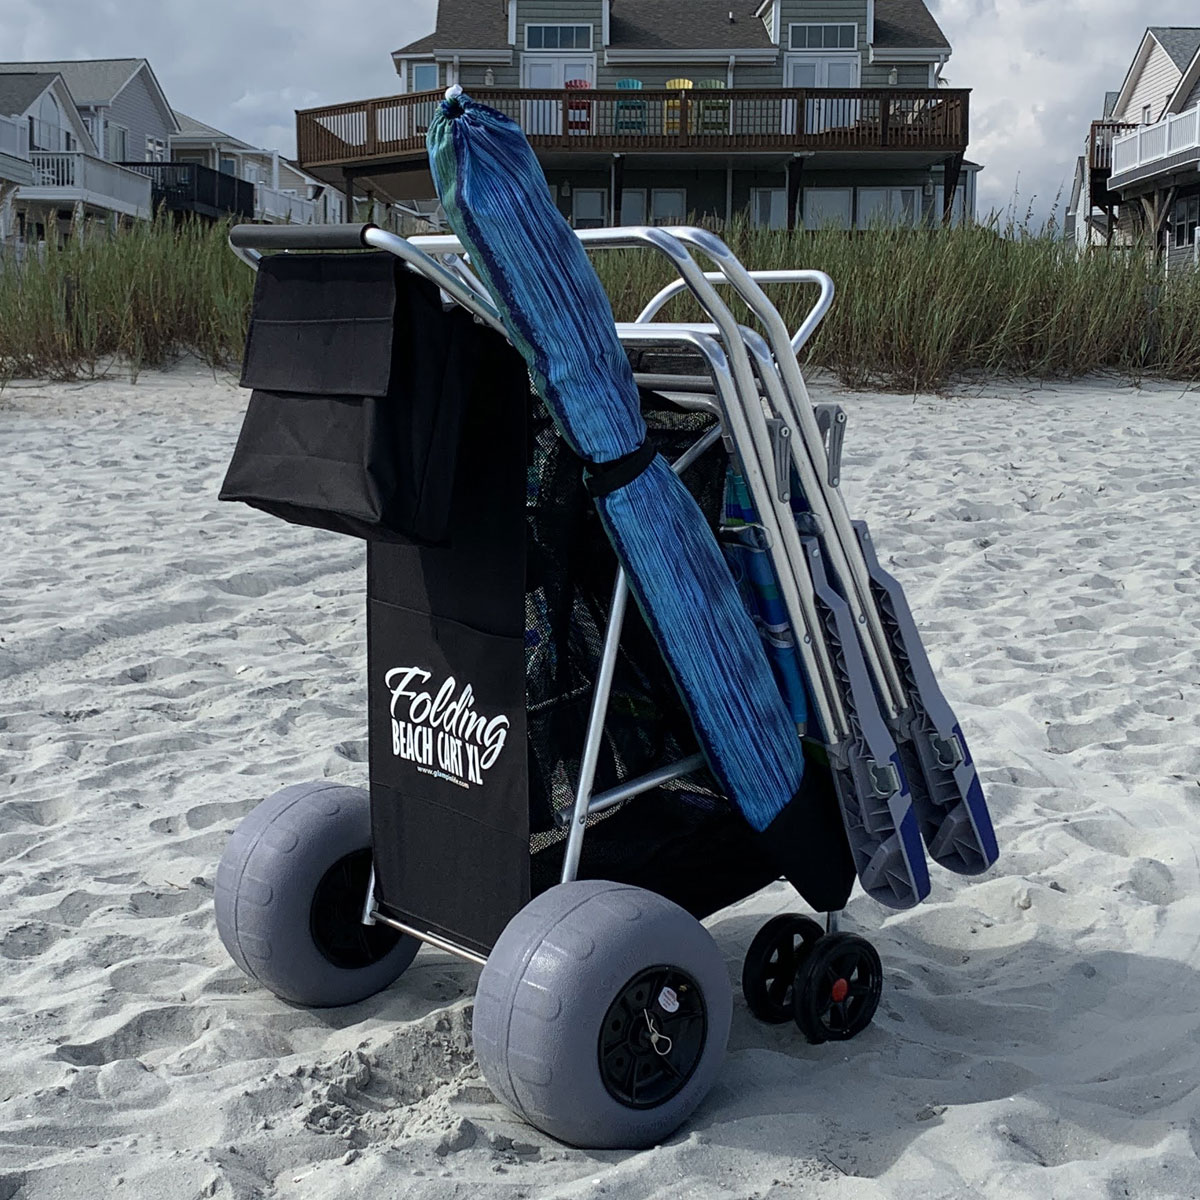 Beach cart wheels